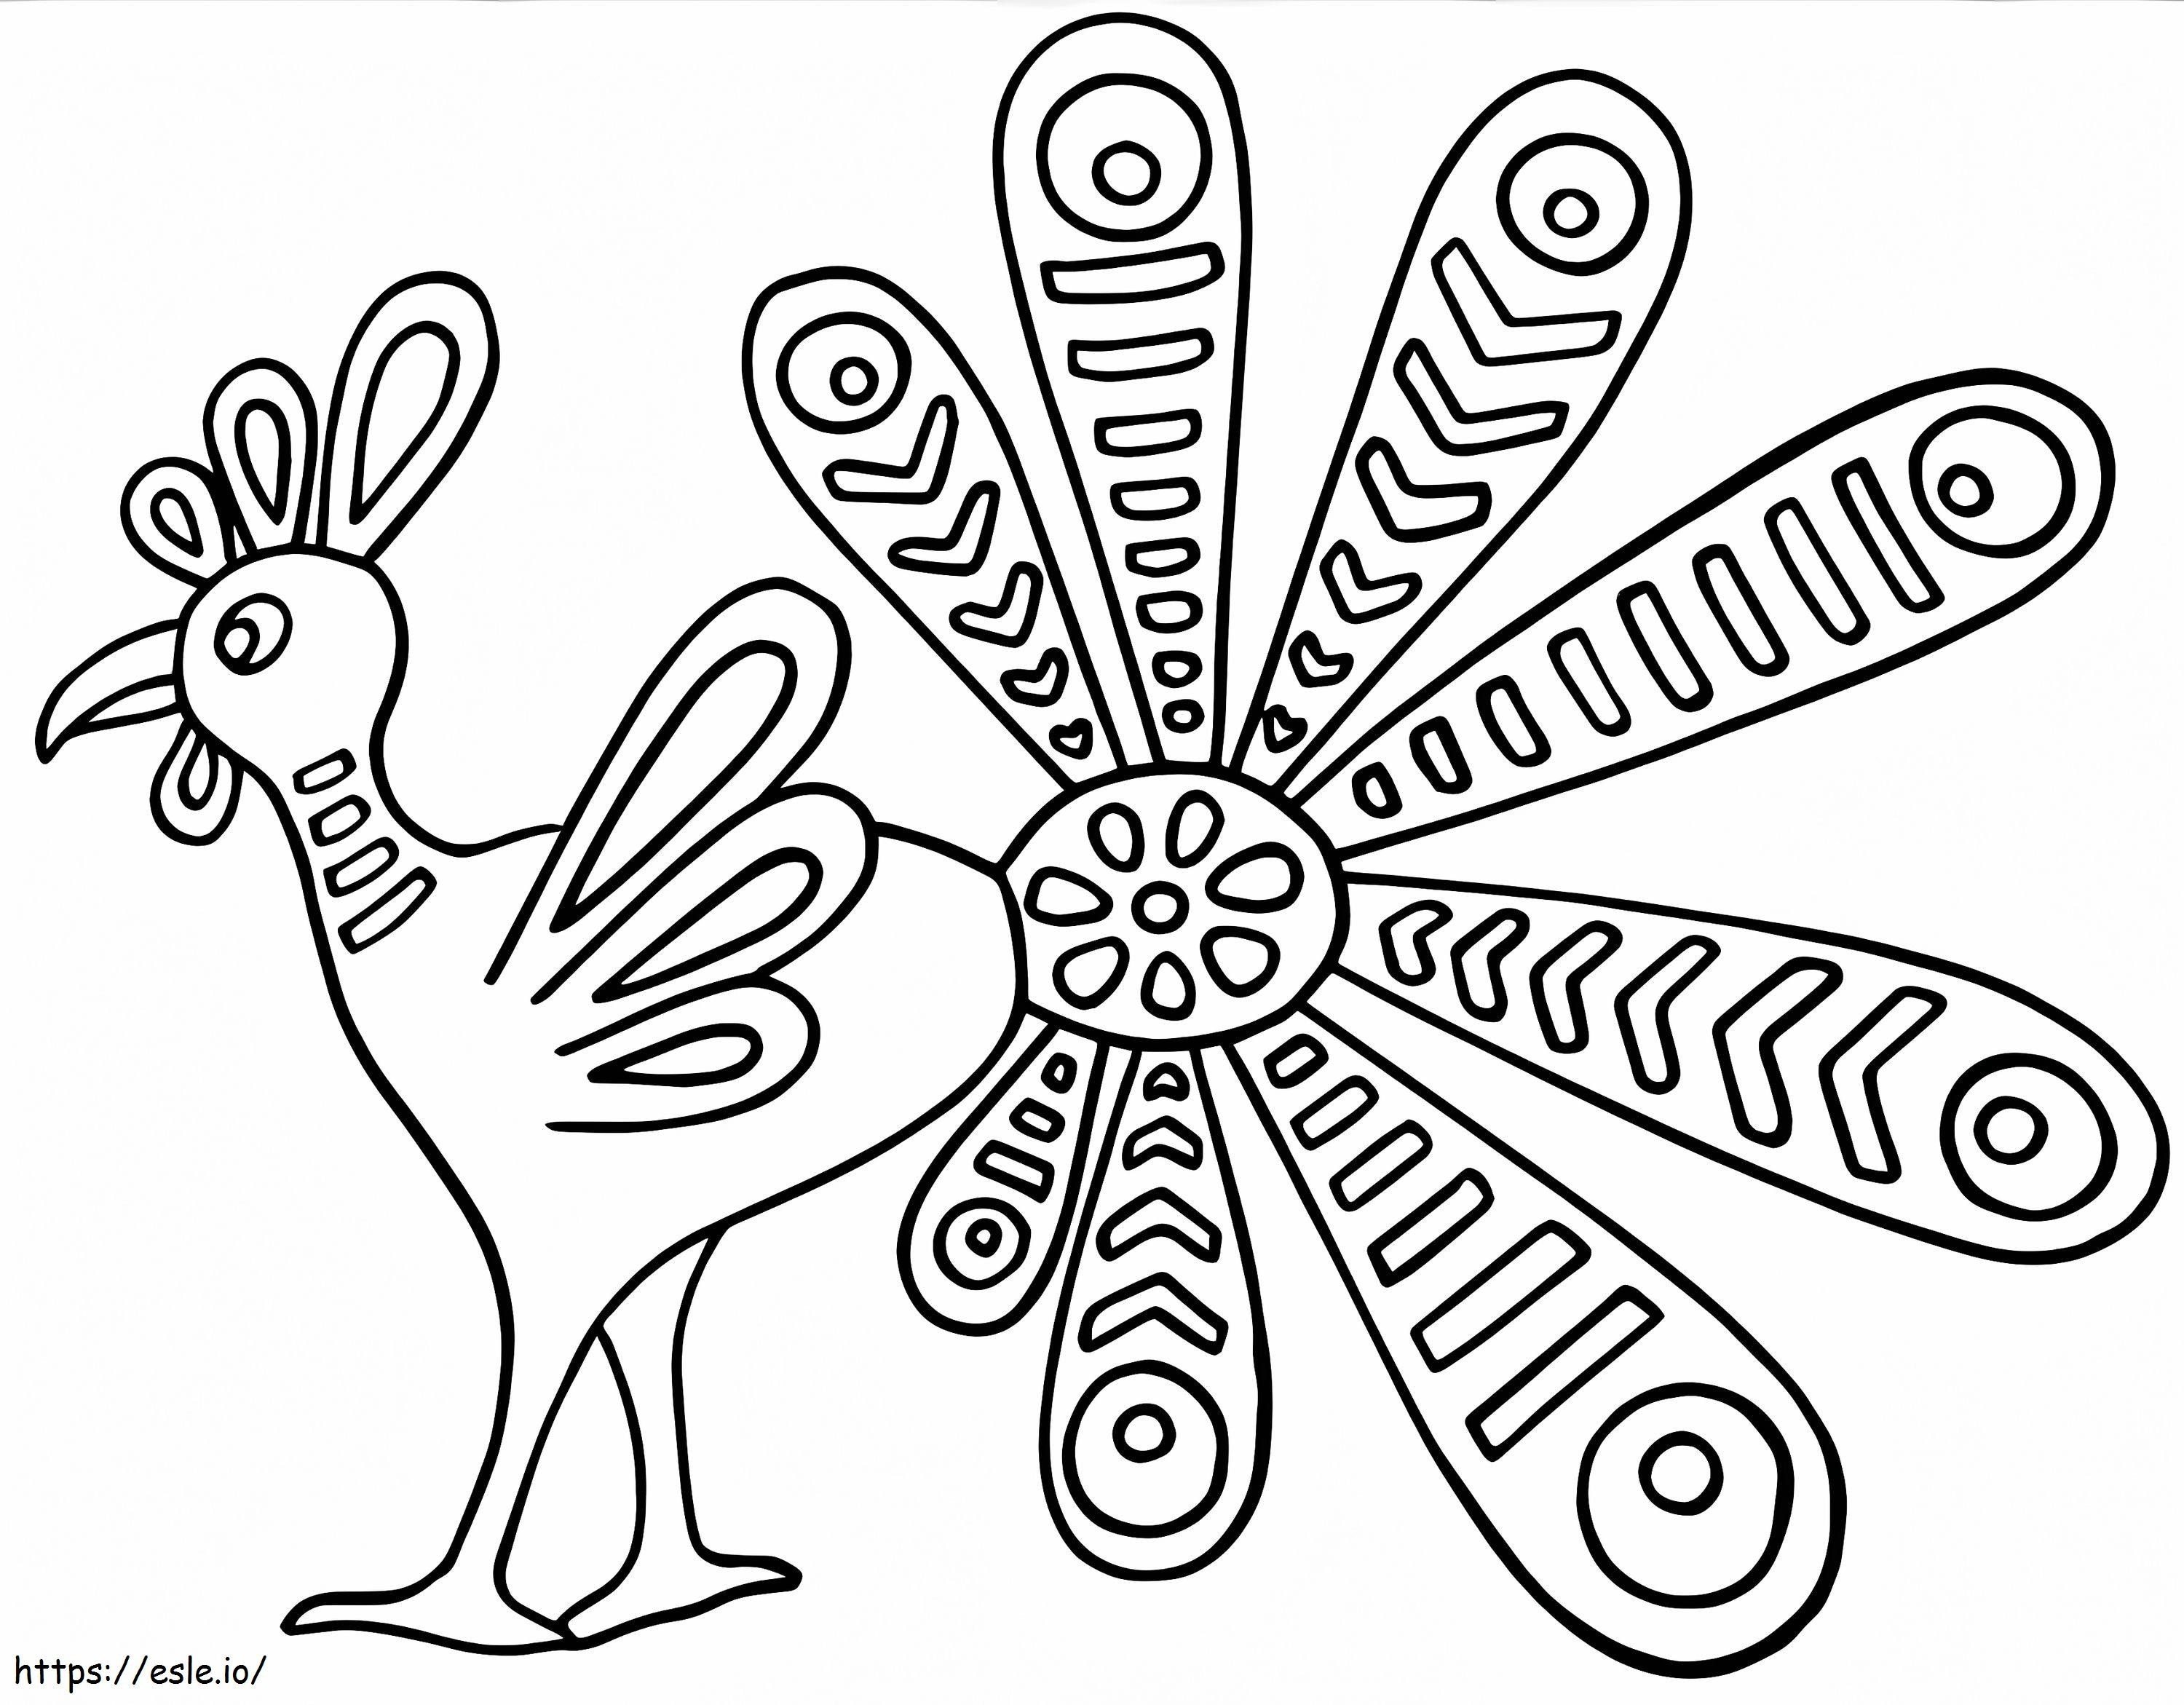 Peacock Alebrijes coloring page